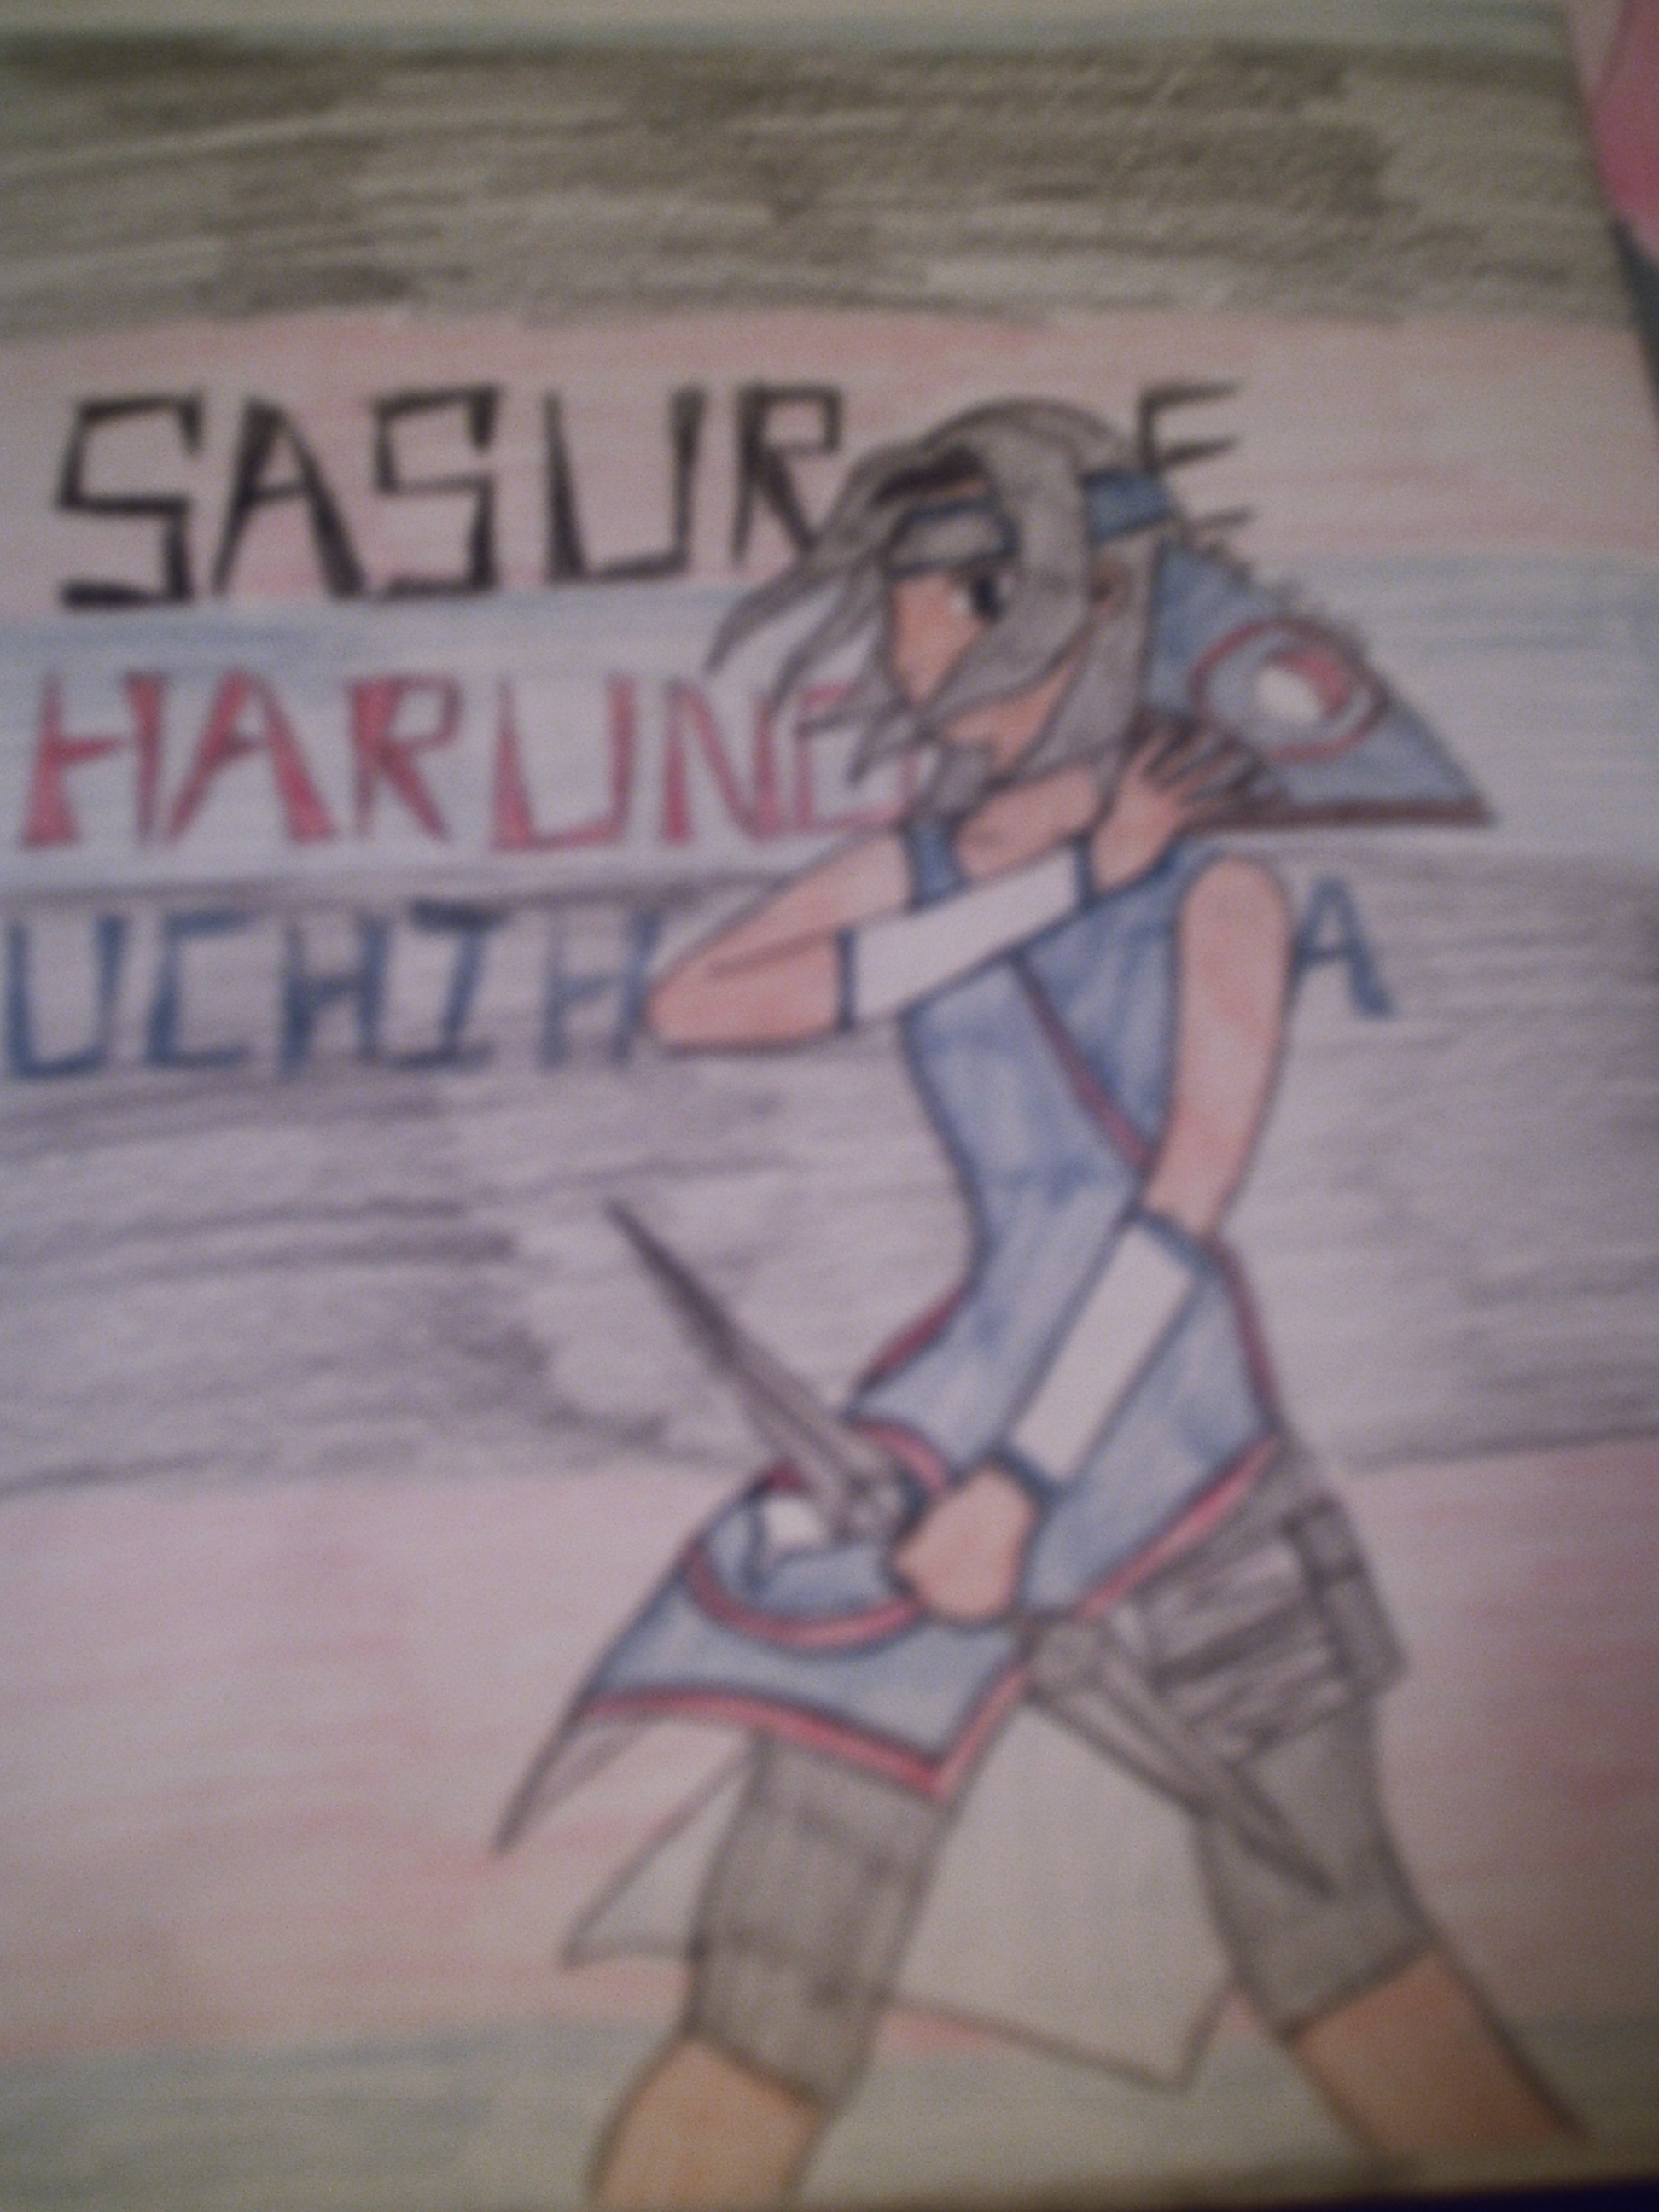 Sasura Haruno Uchiha by clac322